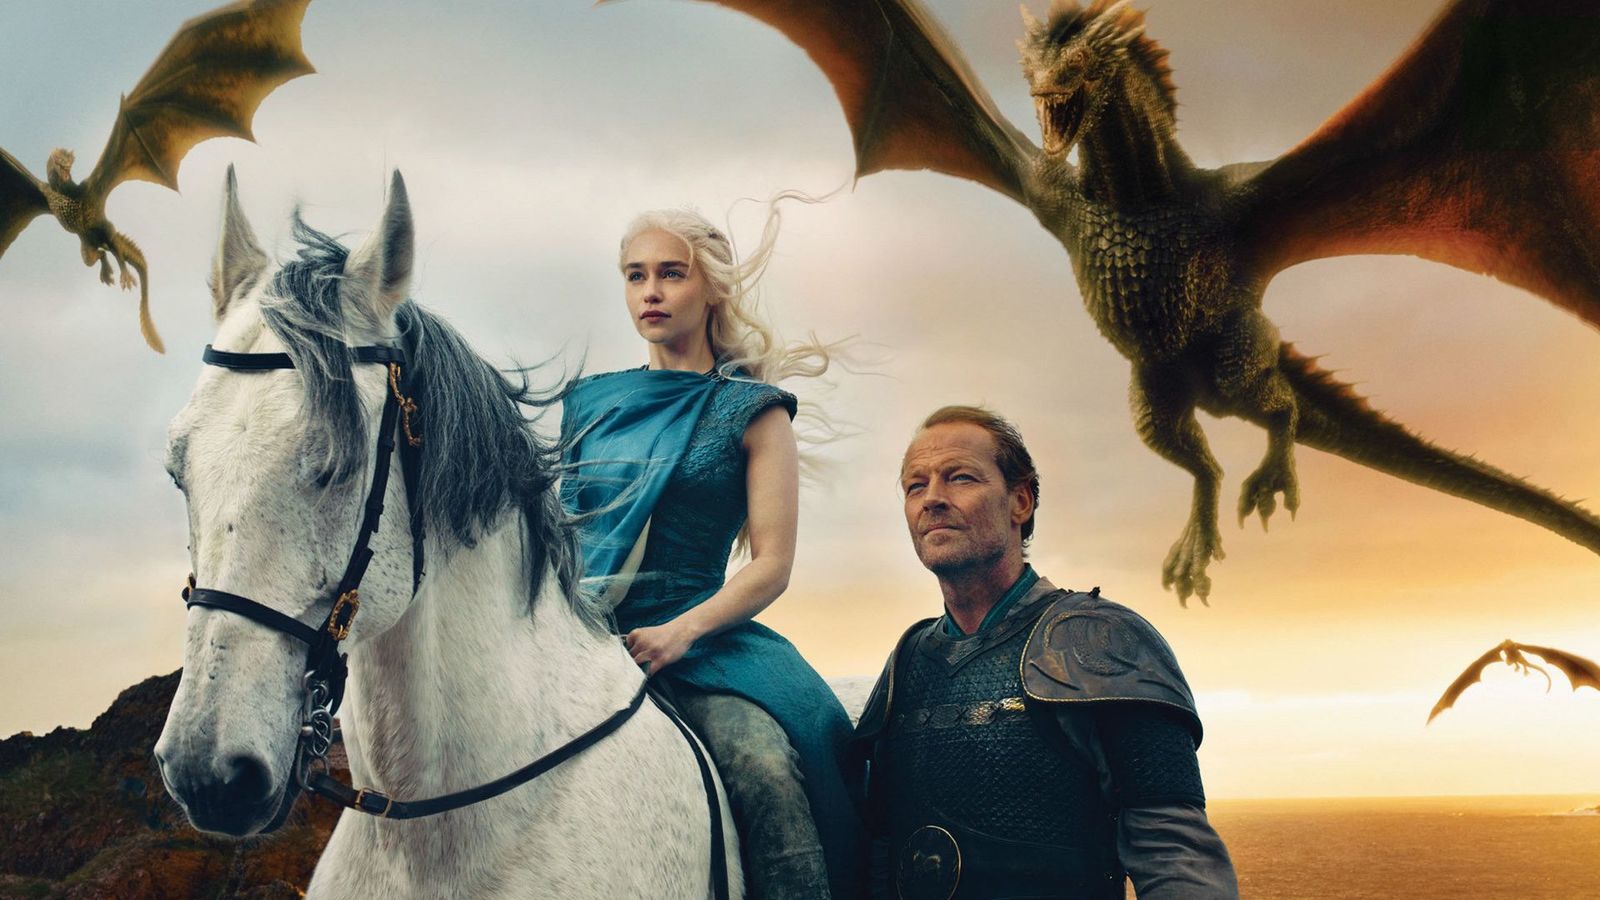 Usługa HBO Max zostanie wydana w maju i będzie kosztować 14,99 USD: obiecują prequel „Gry o tron” o Targaryjenach